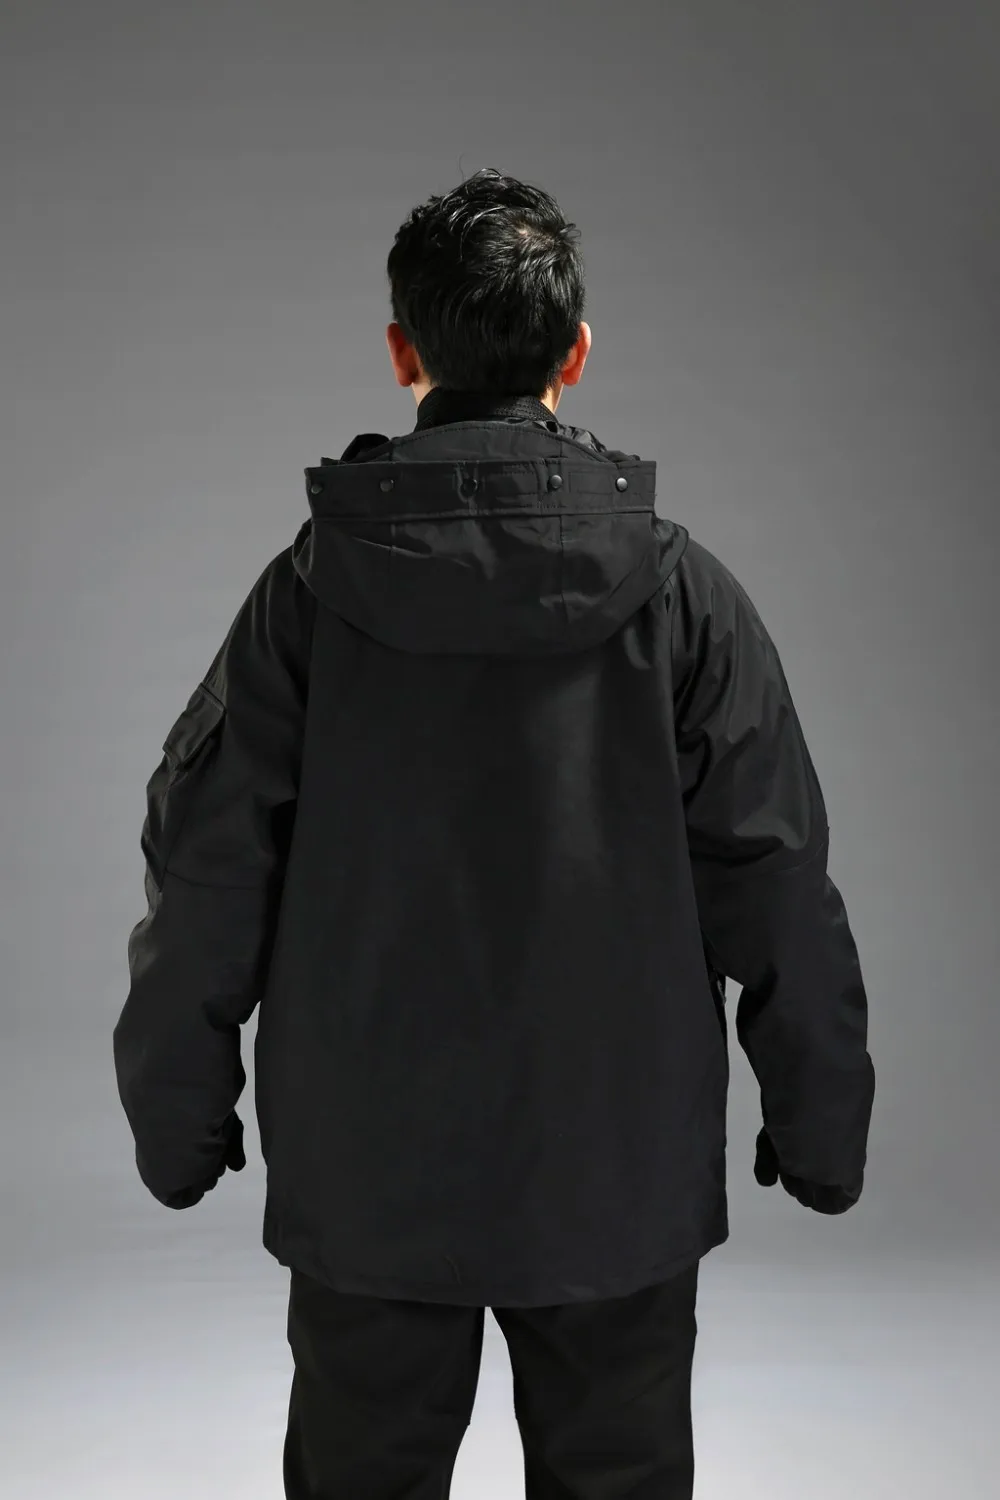 G8 двойной слой давления клей водонепроницаемая куртка со съемным лайнером зимняя уличная альпинистская Лыжная утолщенная теплая 2 в 1 пальто